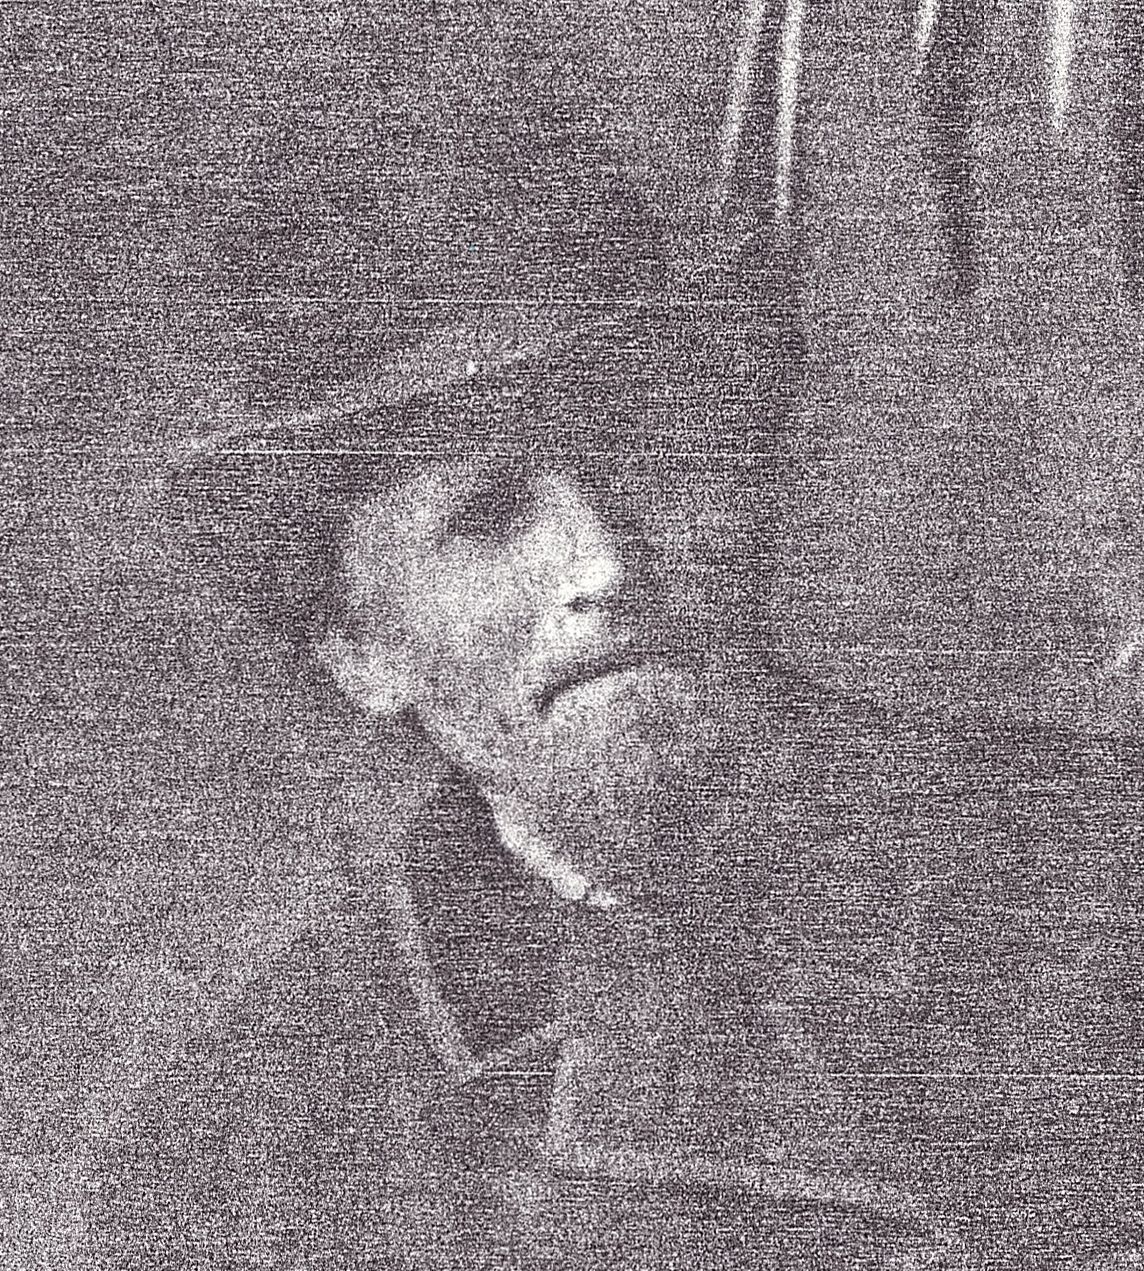 Jens W Jensen (1839 - 1901)